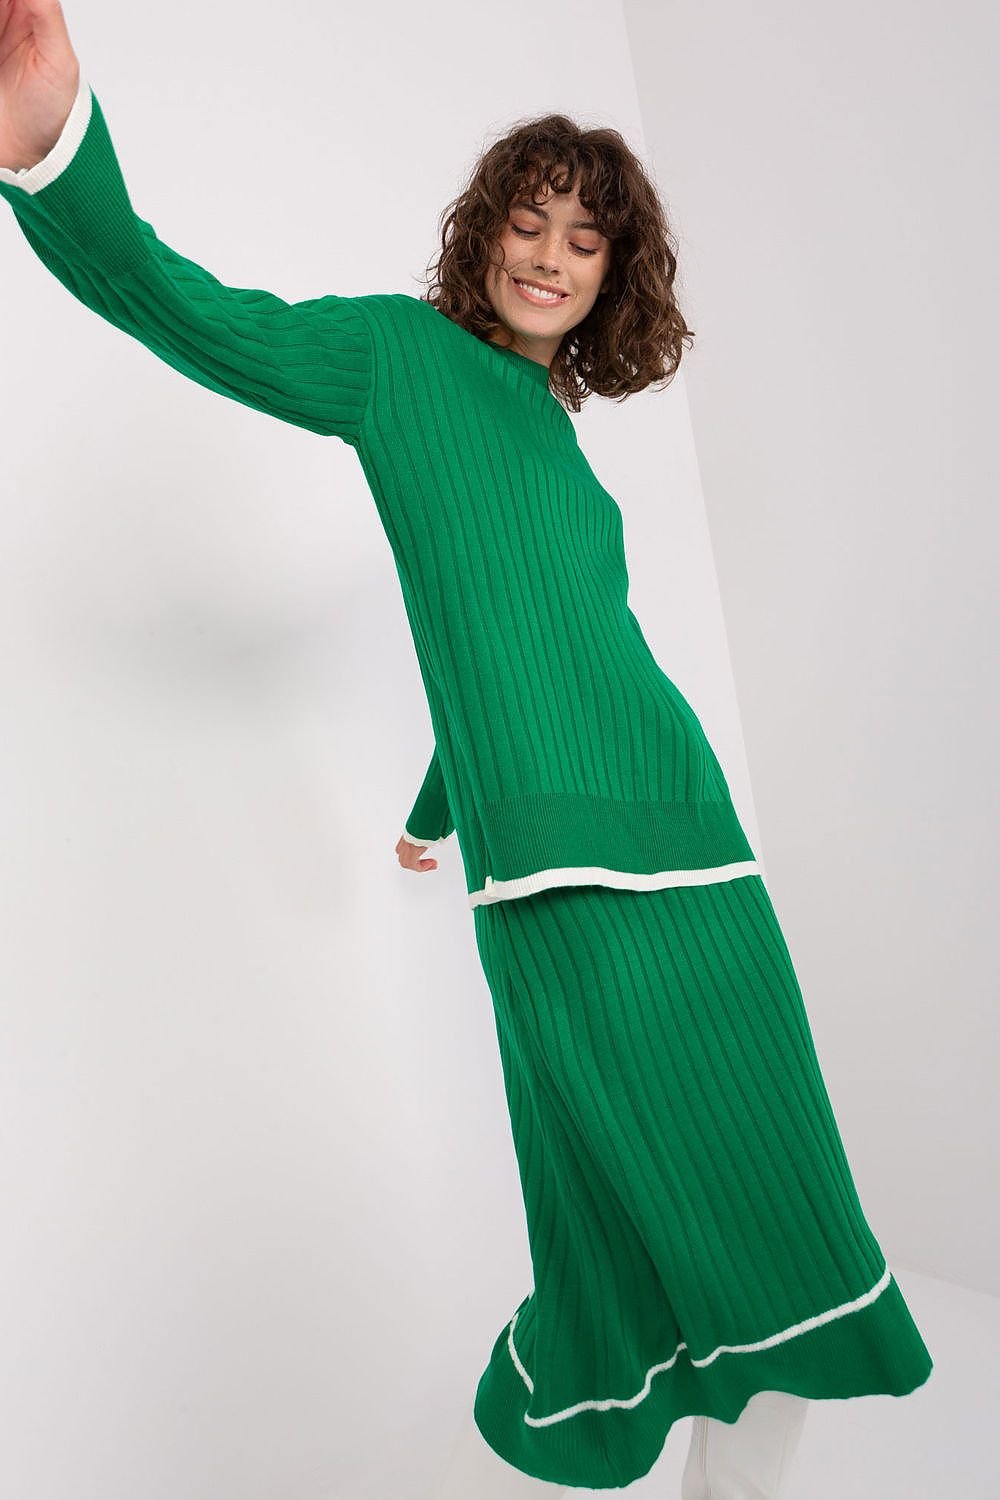 Jupe longue fluide verte en maille avec haut assorti pour un style élégant et confortable, parfait pour les ensembles coordonnés.